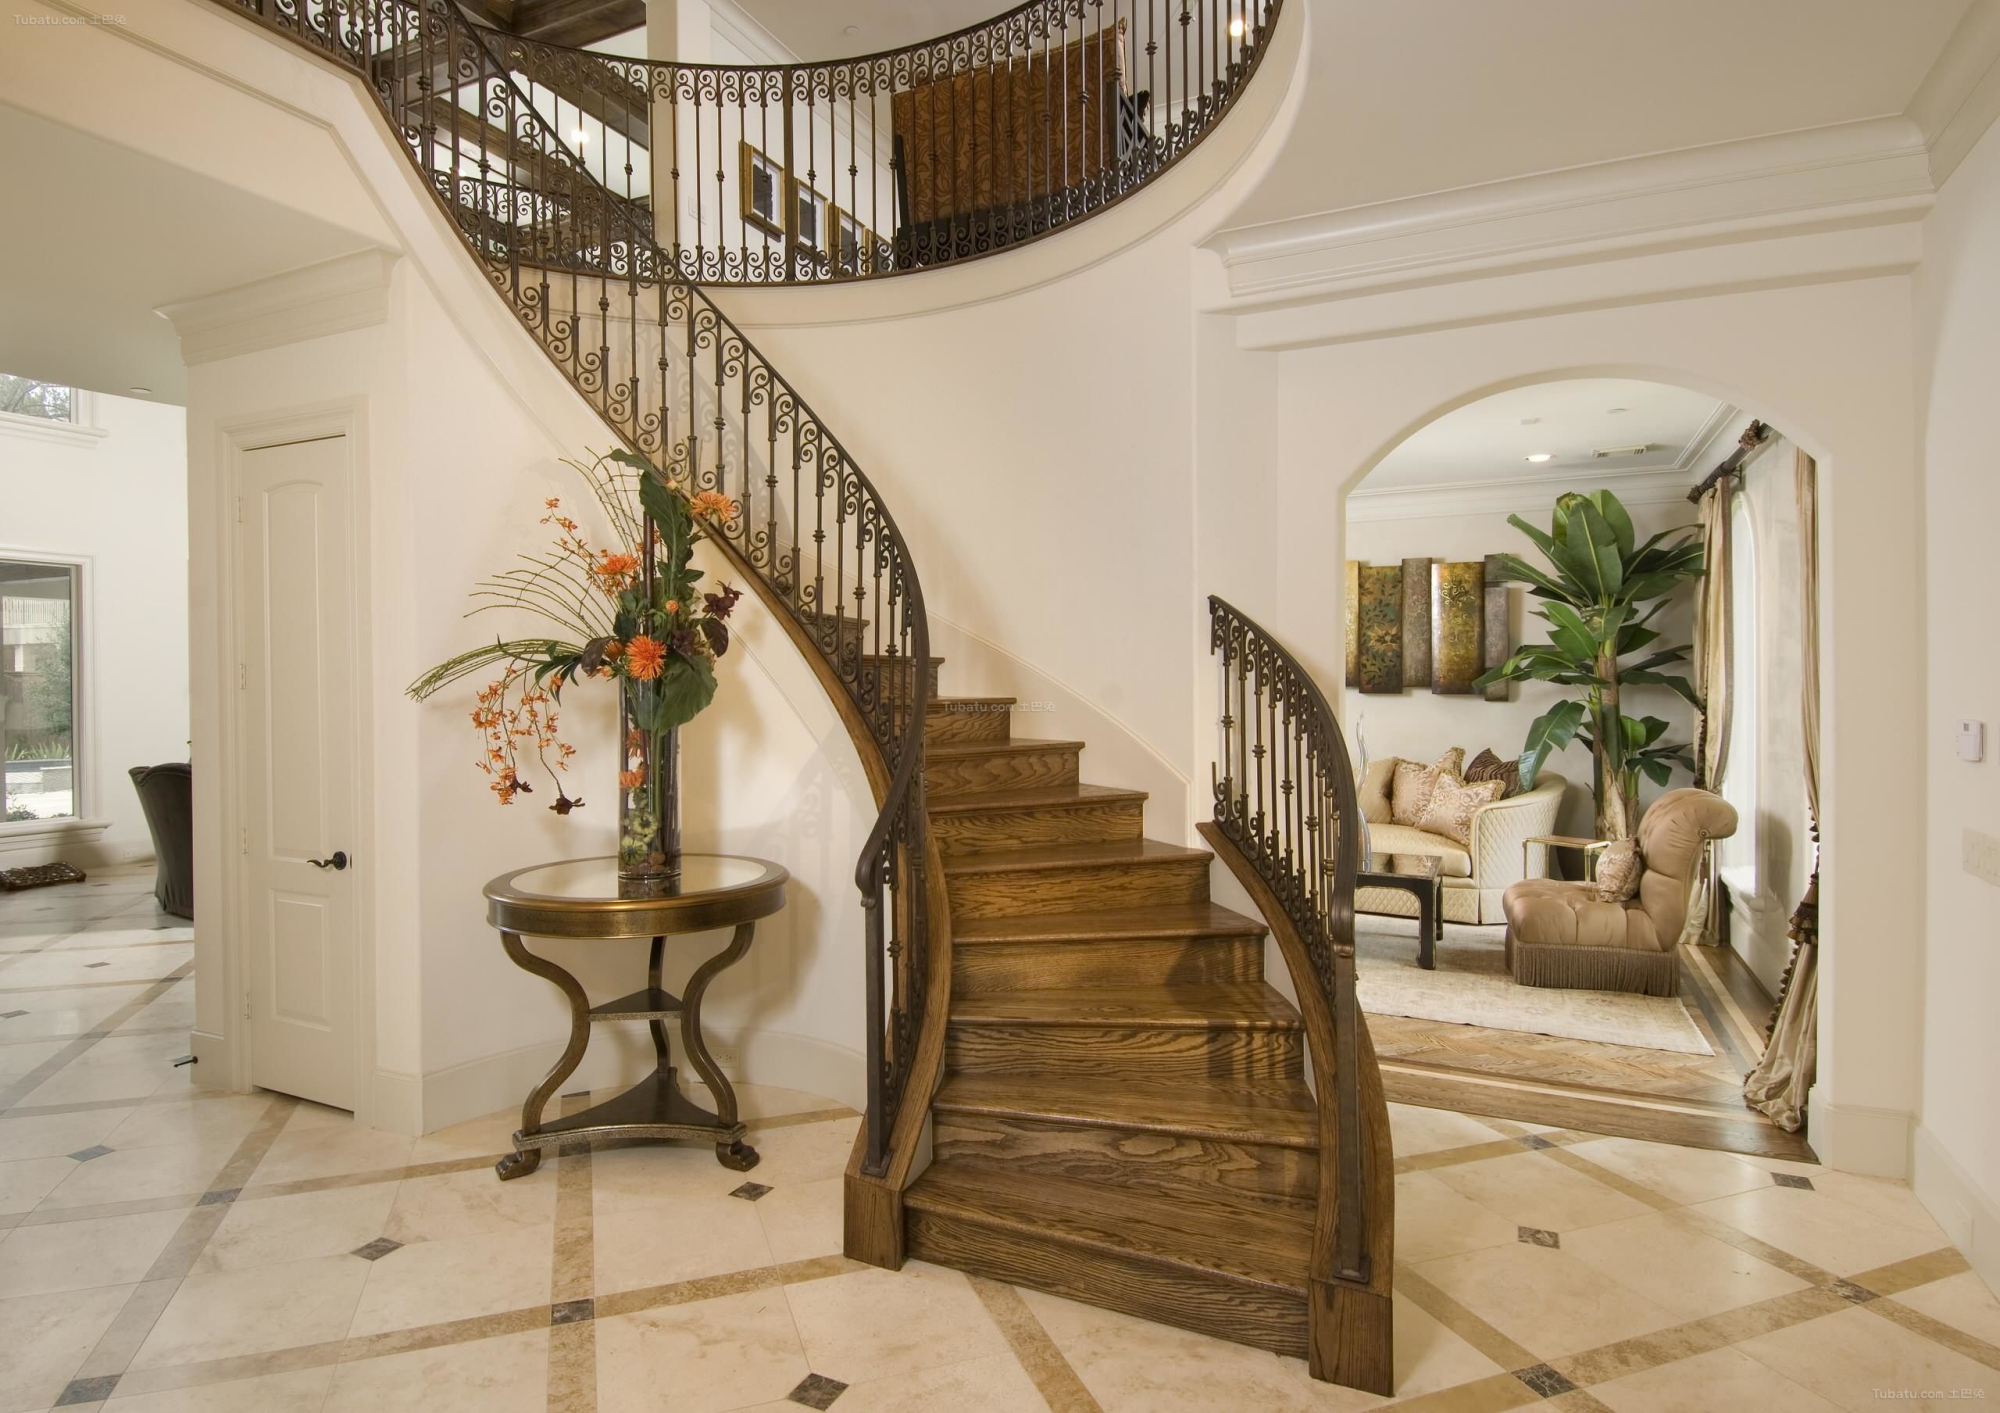 楼梯是室内主要造型元素,能满足交通联系,可创造优美的室内环境